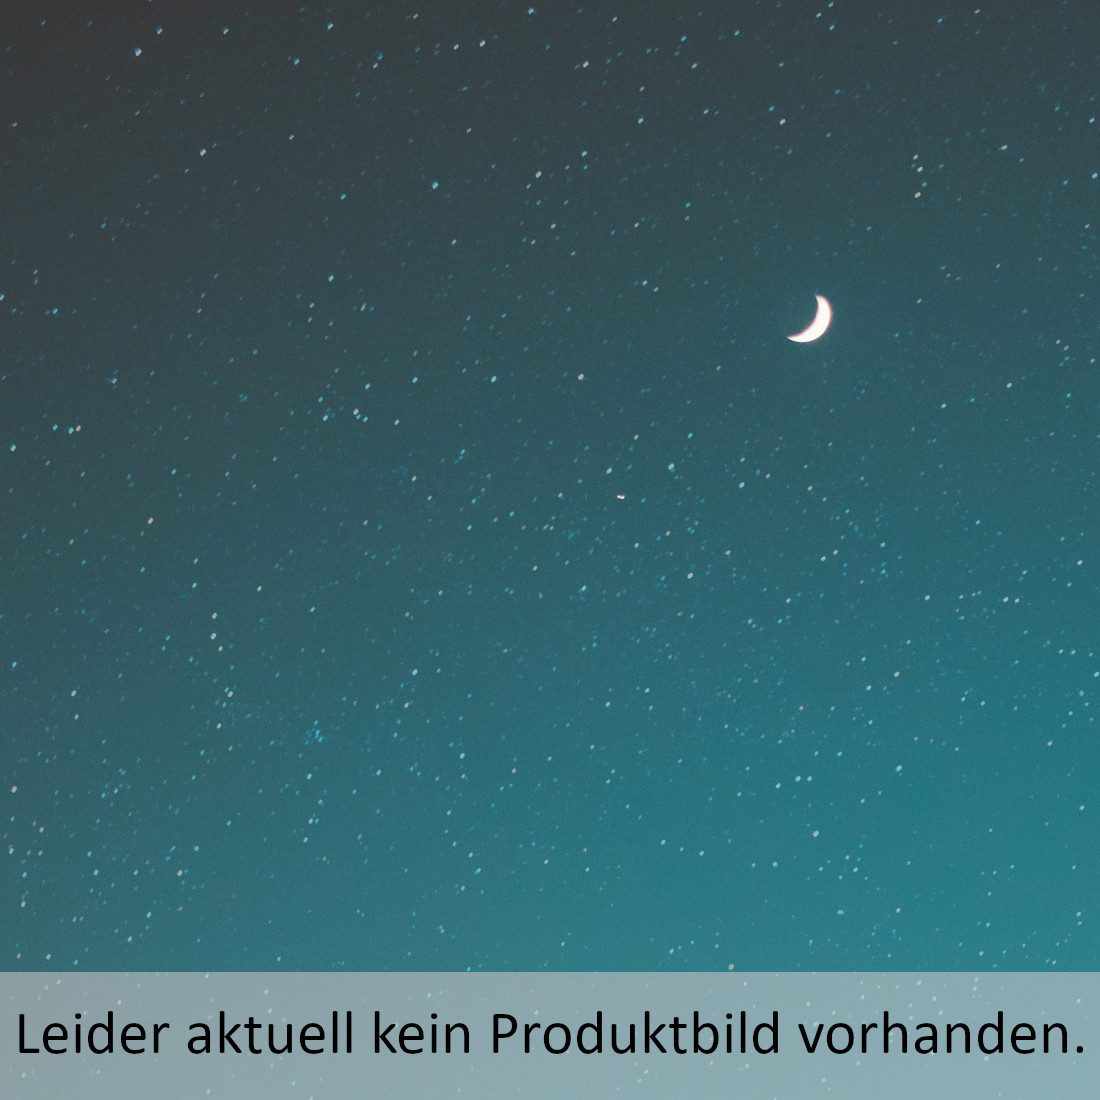 EvKiki Umschlag 3-12 - Druckversion.jpg_product_product_product_product_product_product_product_product